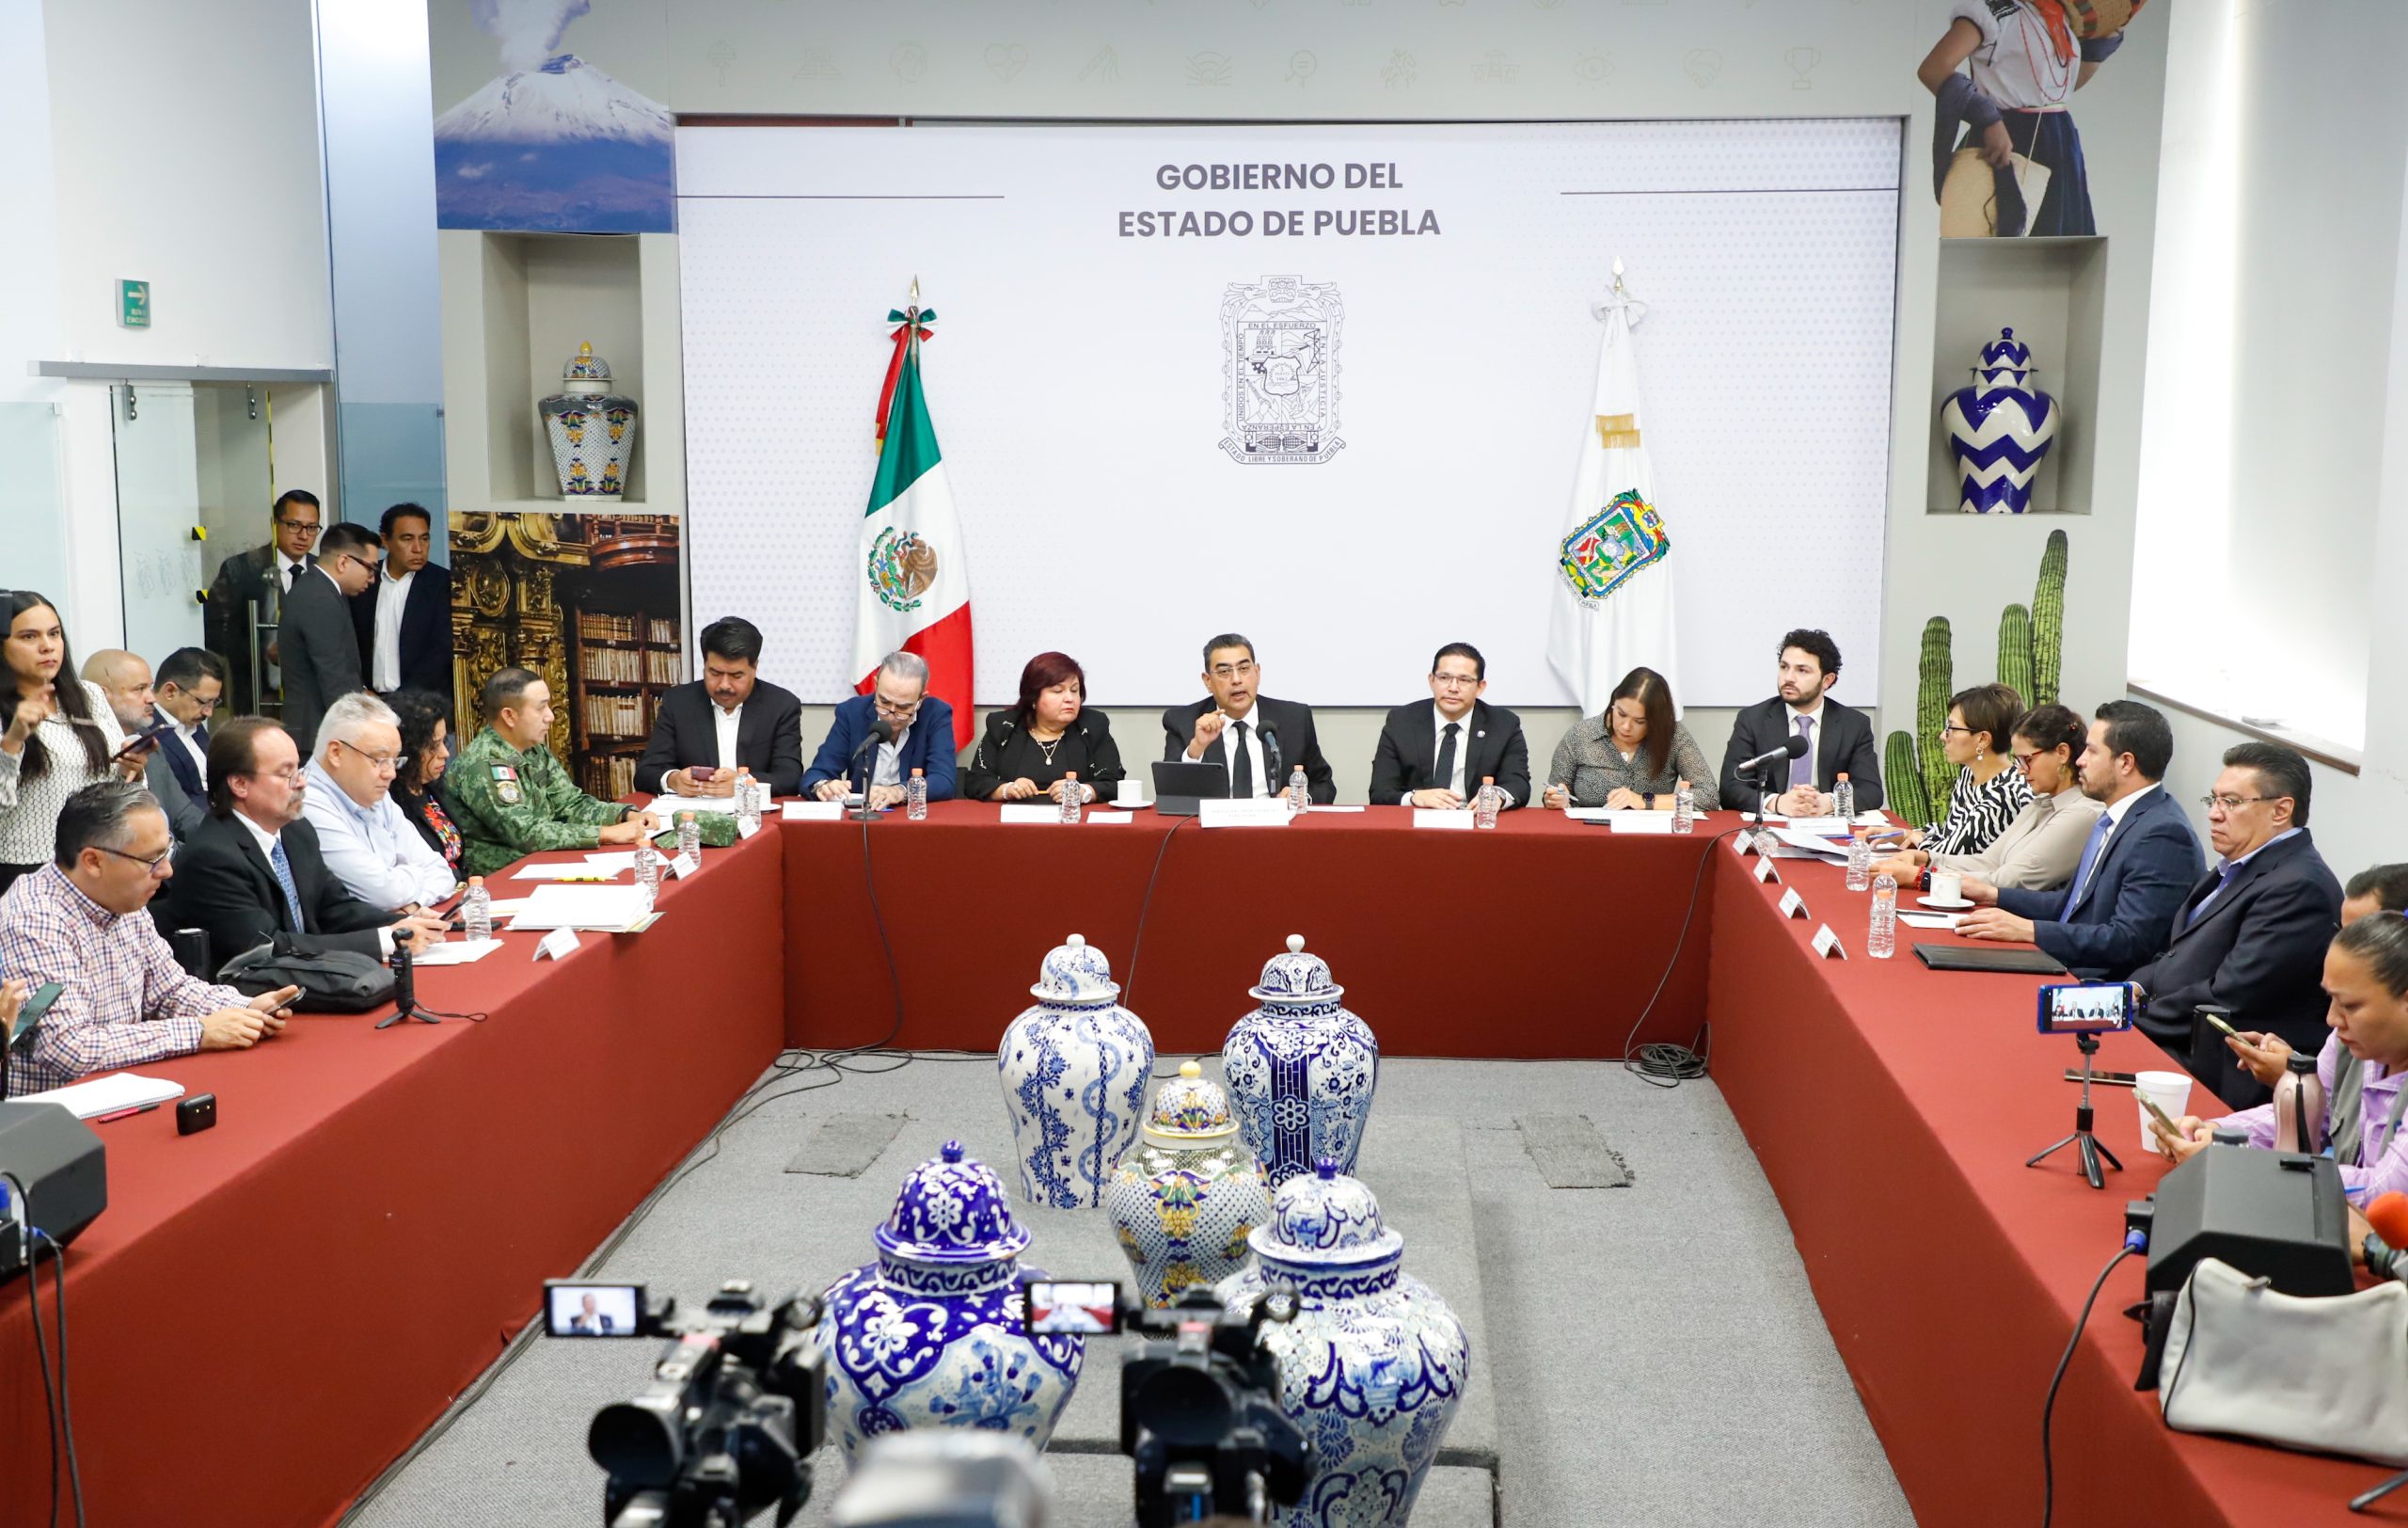 Gobierno de Puebla Condena los Actos Delictivos Ocurridos en Chignahuapan